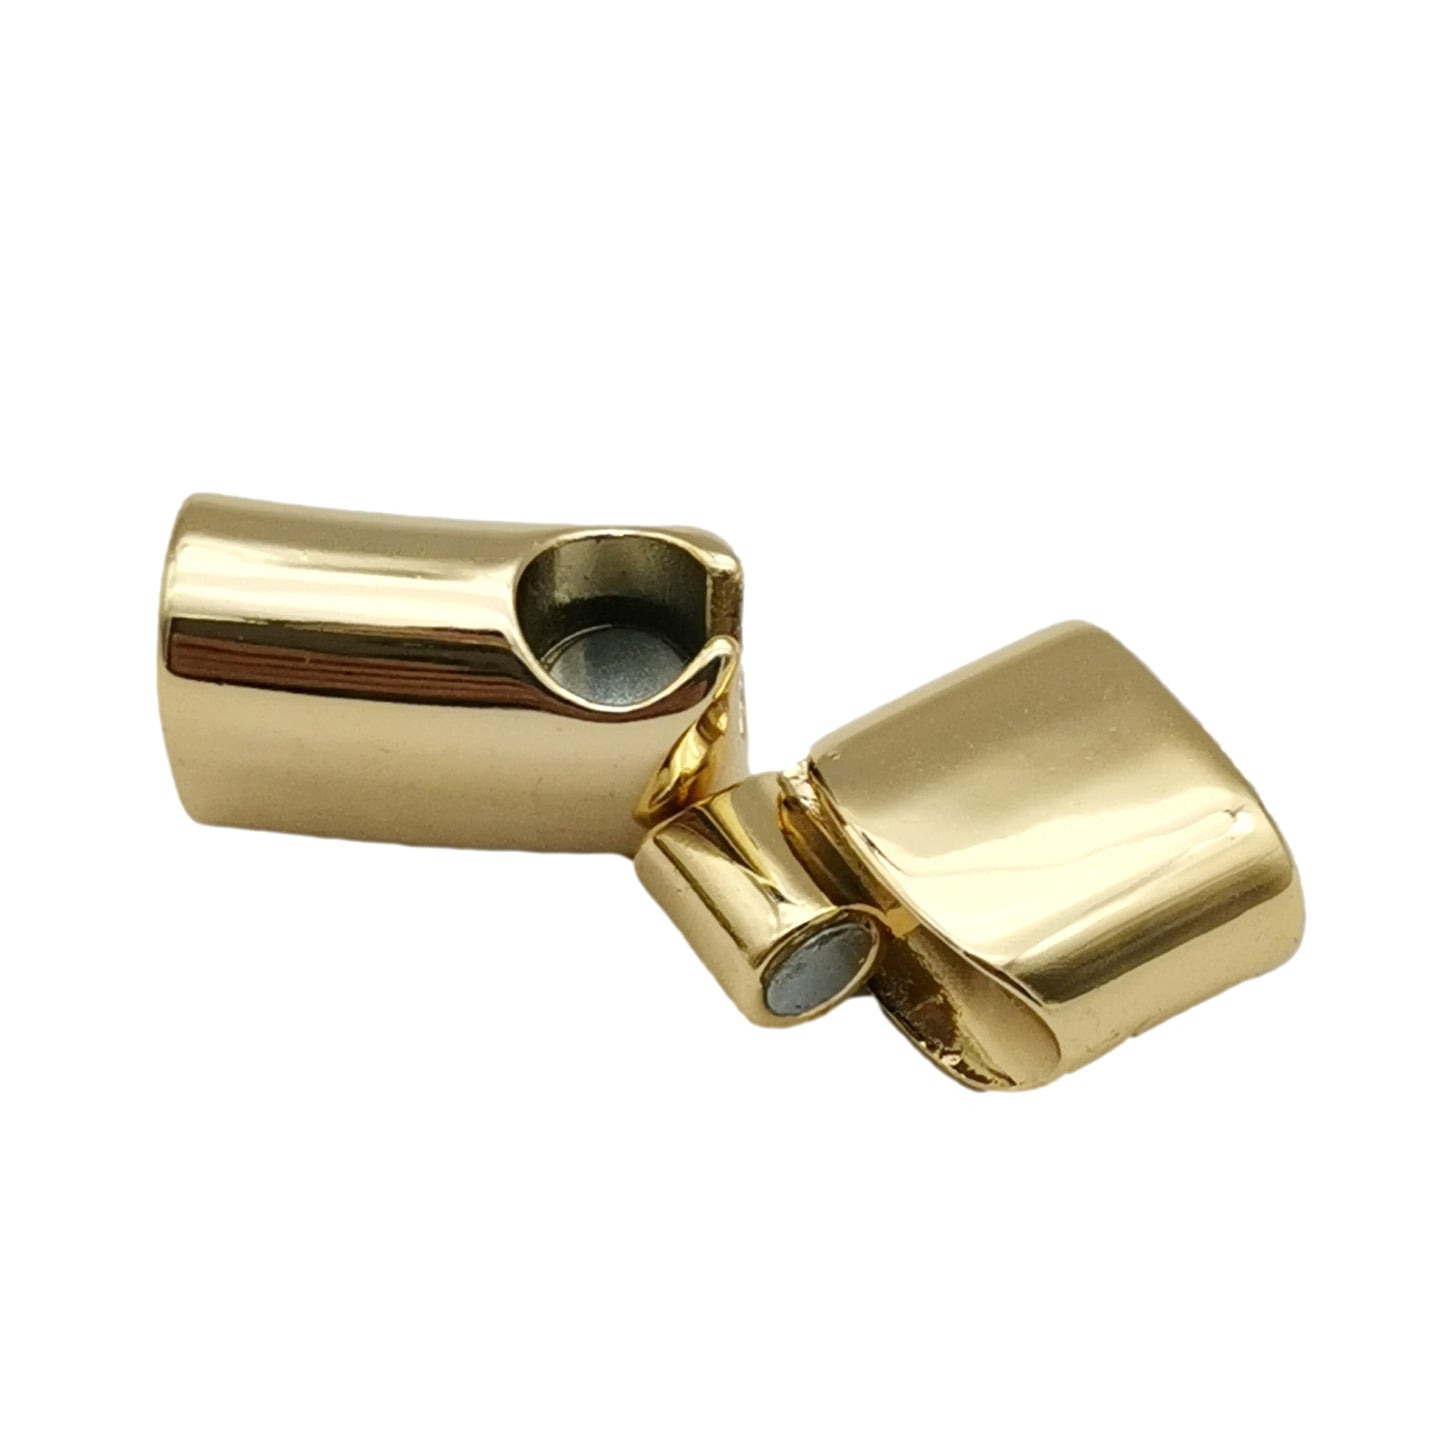 Lakritzleder-Kordelende, magnetische Verschlüsse und Verschluss, 12 x 6 mm Loch, Gold